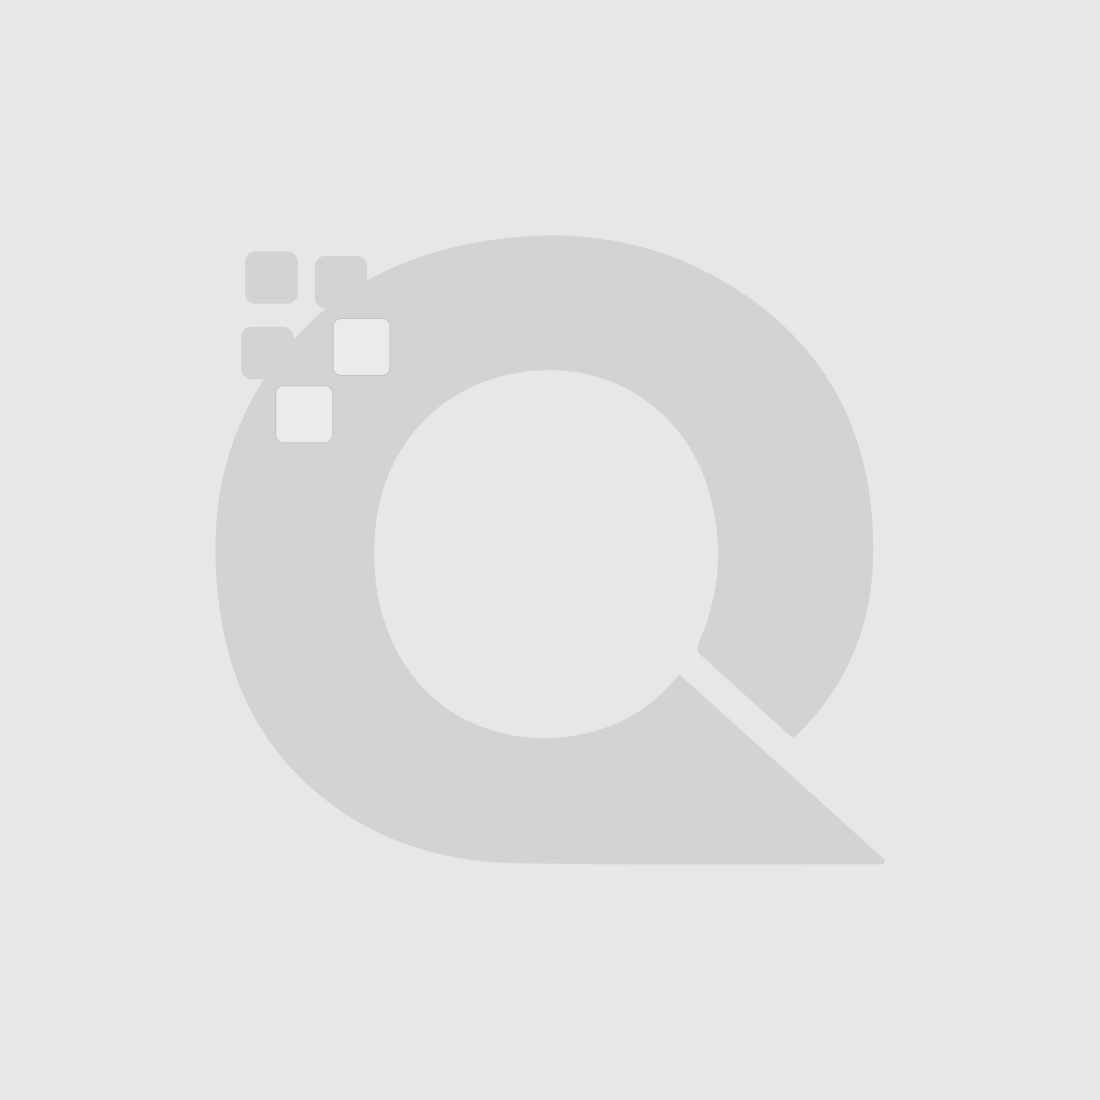 Guerniss Paris Velvet Matte Lipstick - GS025 - 3.5g